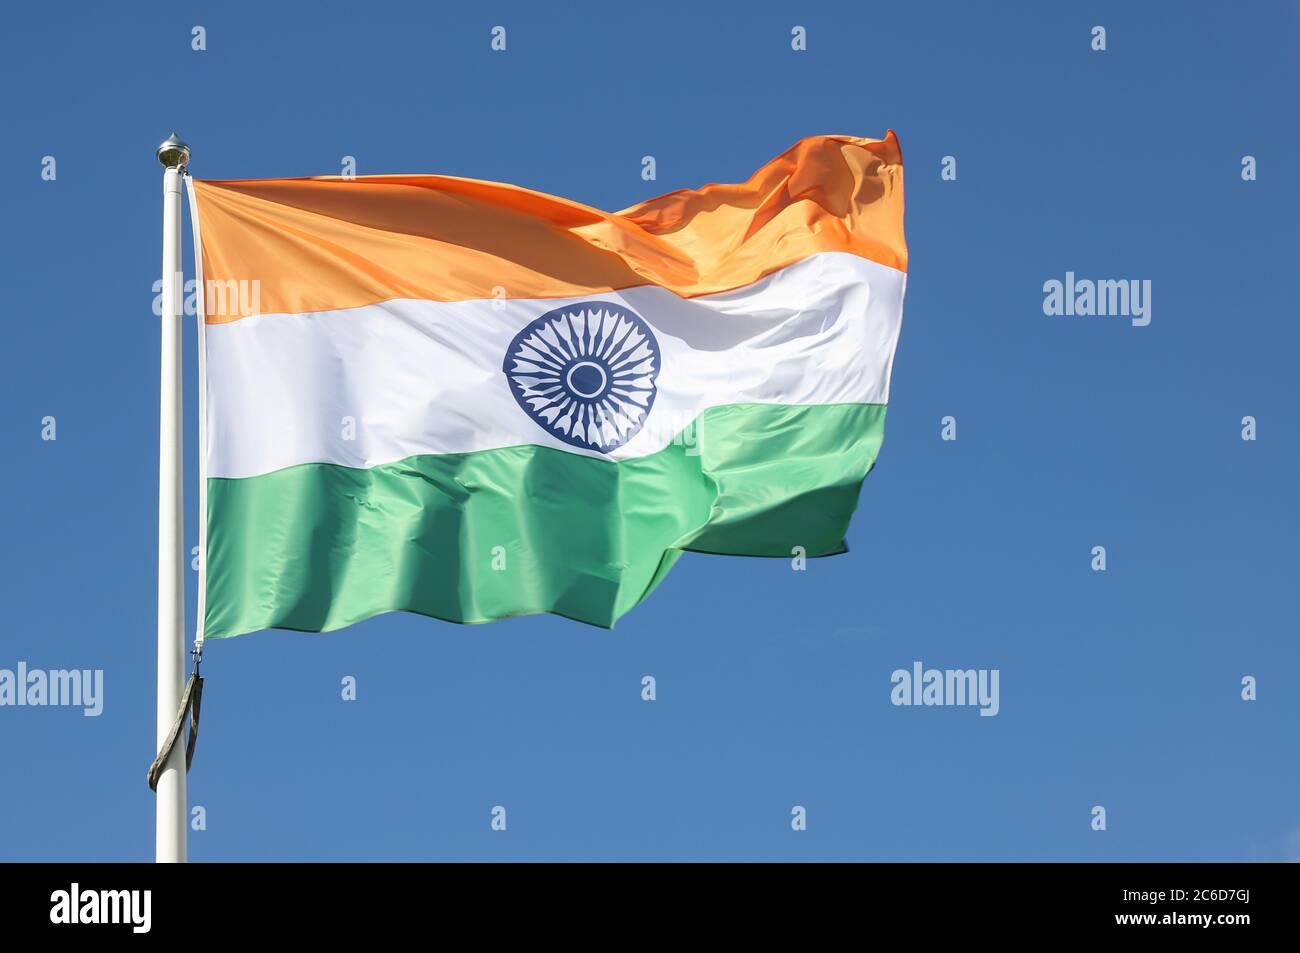 The flag of India against a blue sky.Närbild på indisk flagga mot blå himmel. Stock Photo